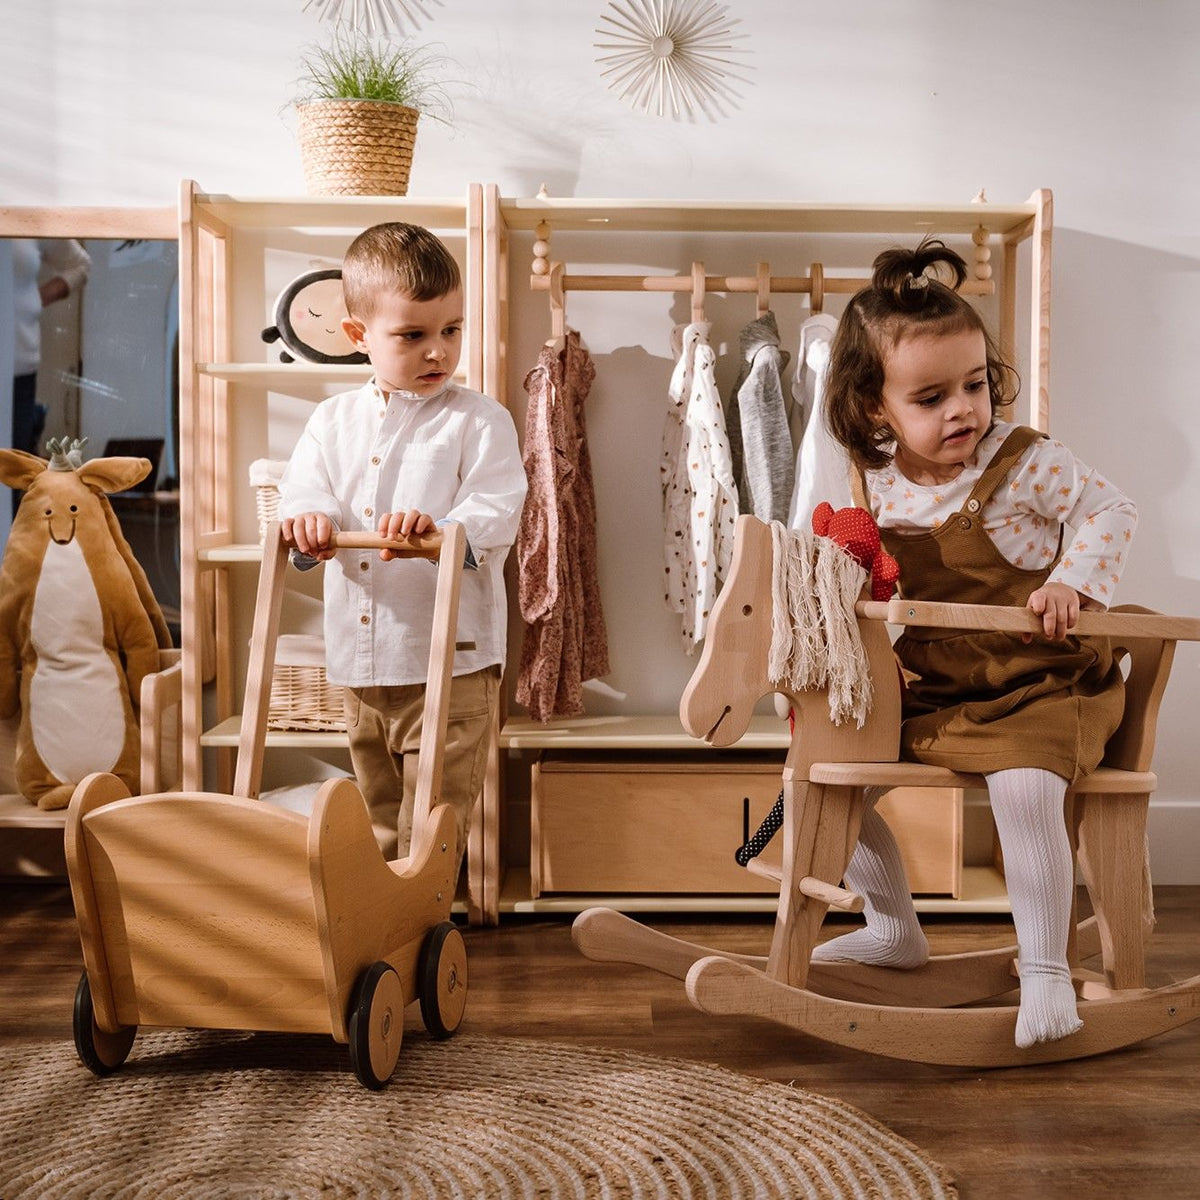 Wardrobe combined with Maxi Shelf - Montessori®